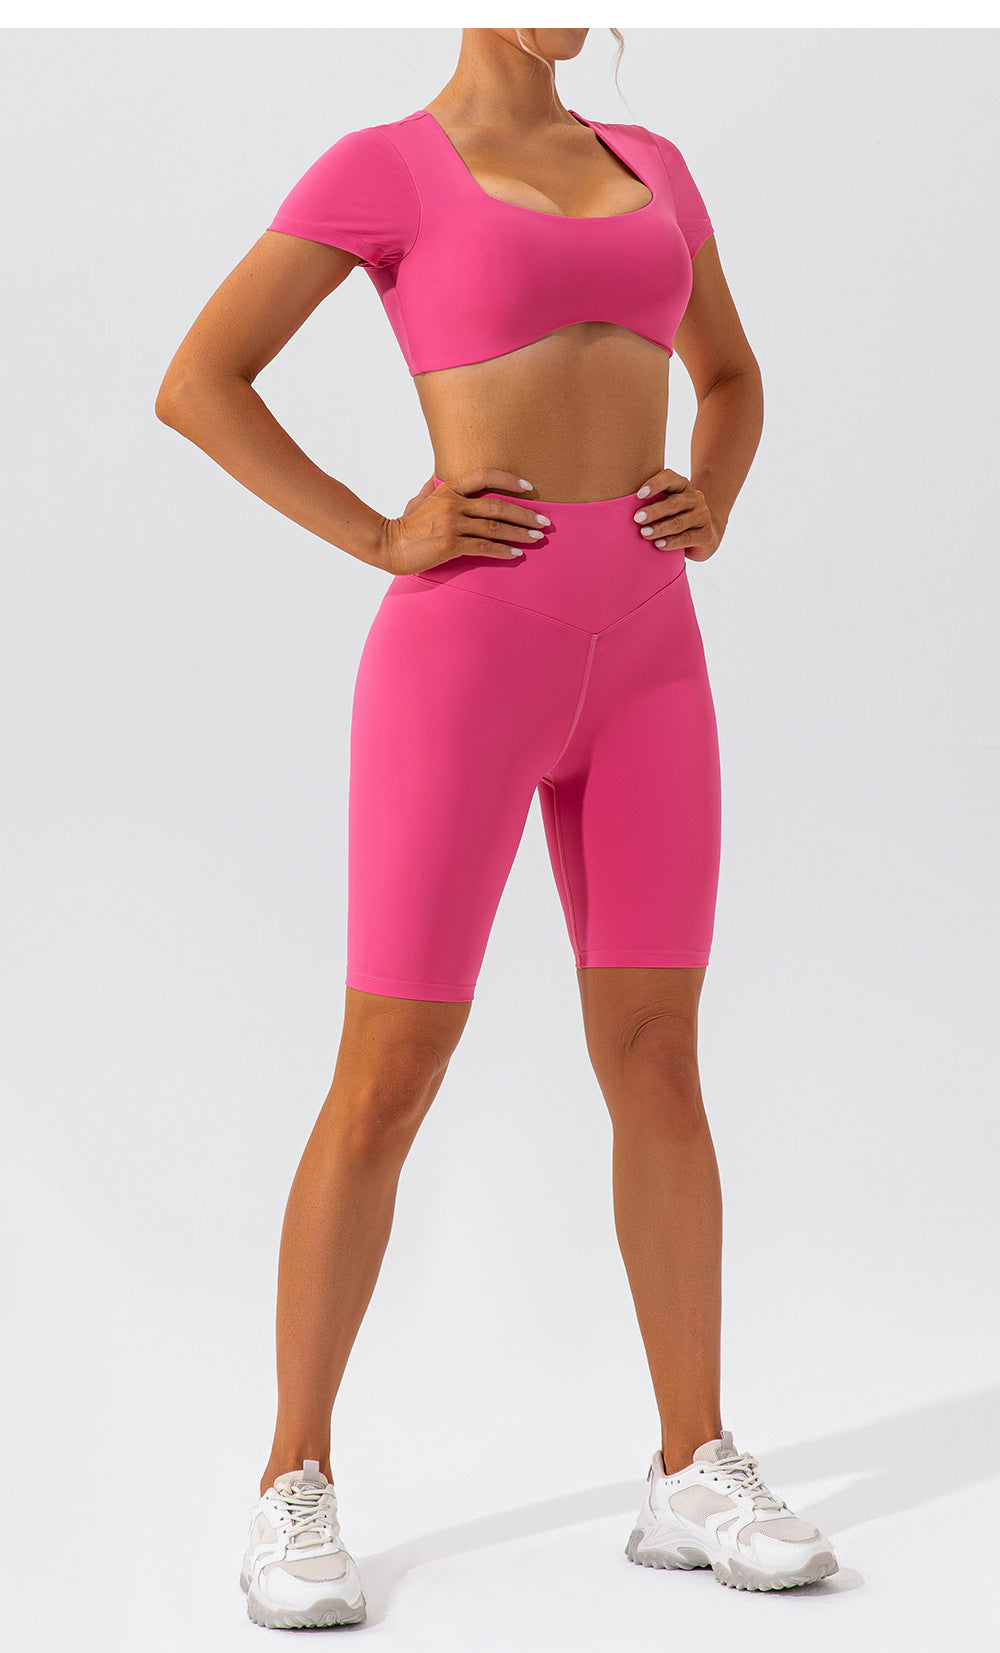 yoga clothing shorts suit short-sleeved beautiful back running sports yoga clothing suit for women